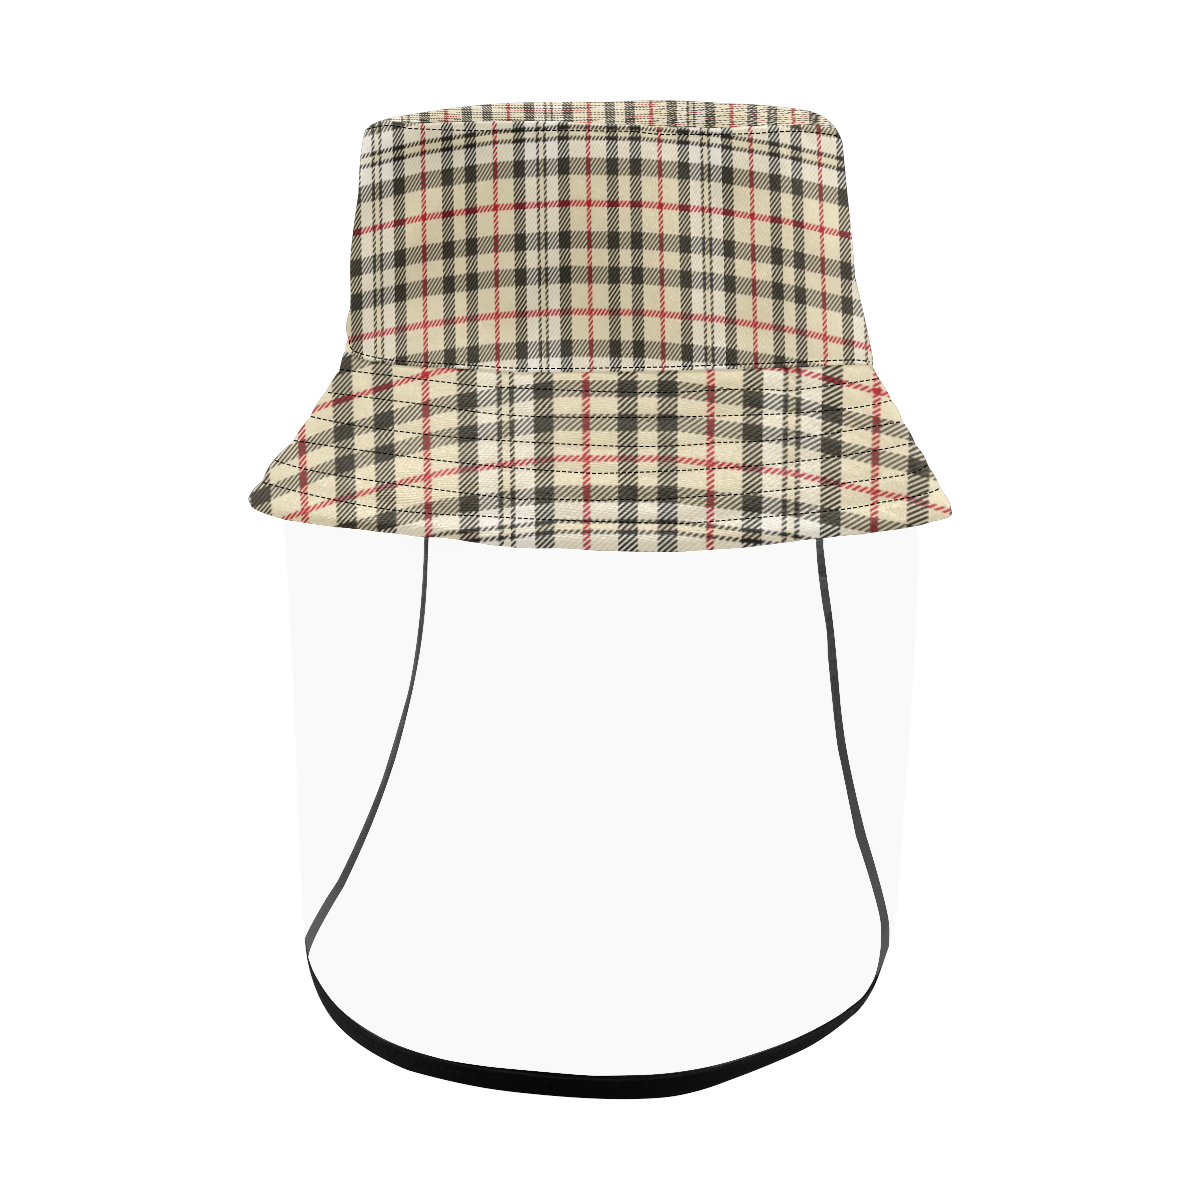 STRIPES LIGHT BROWN Men's Bucket Hat (Detachable Face Shield)